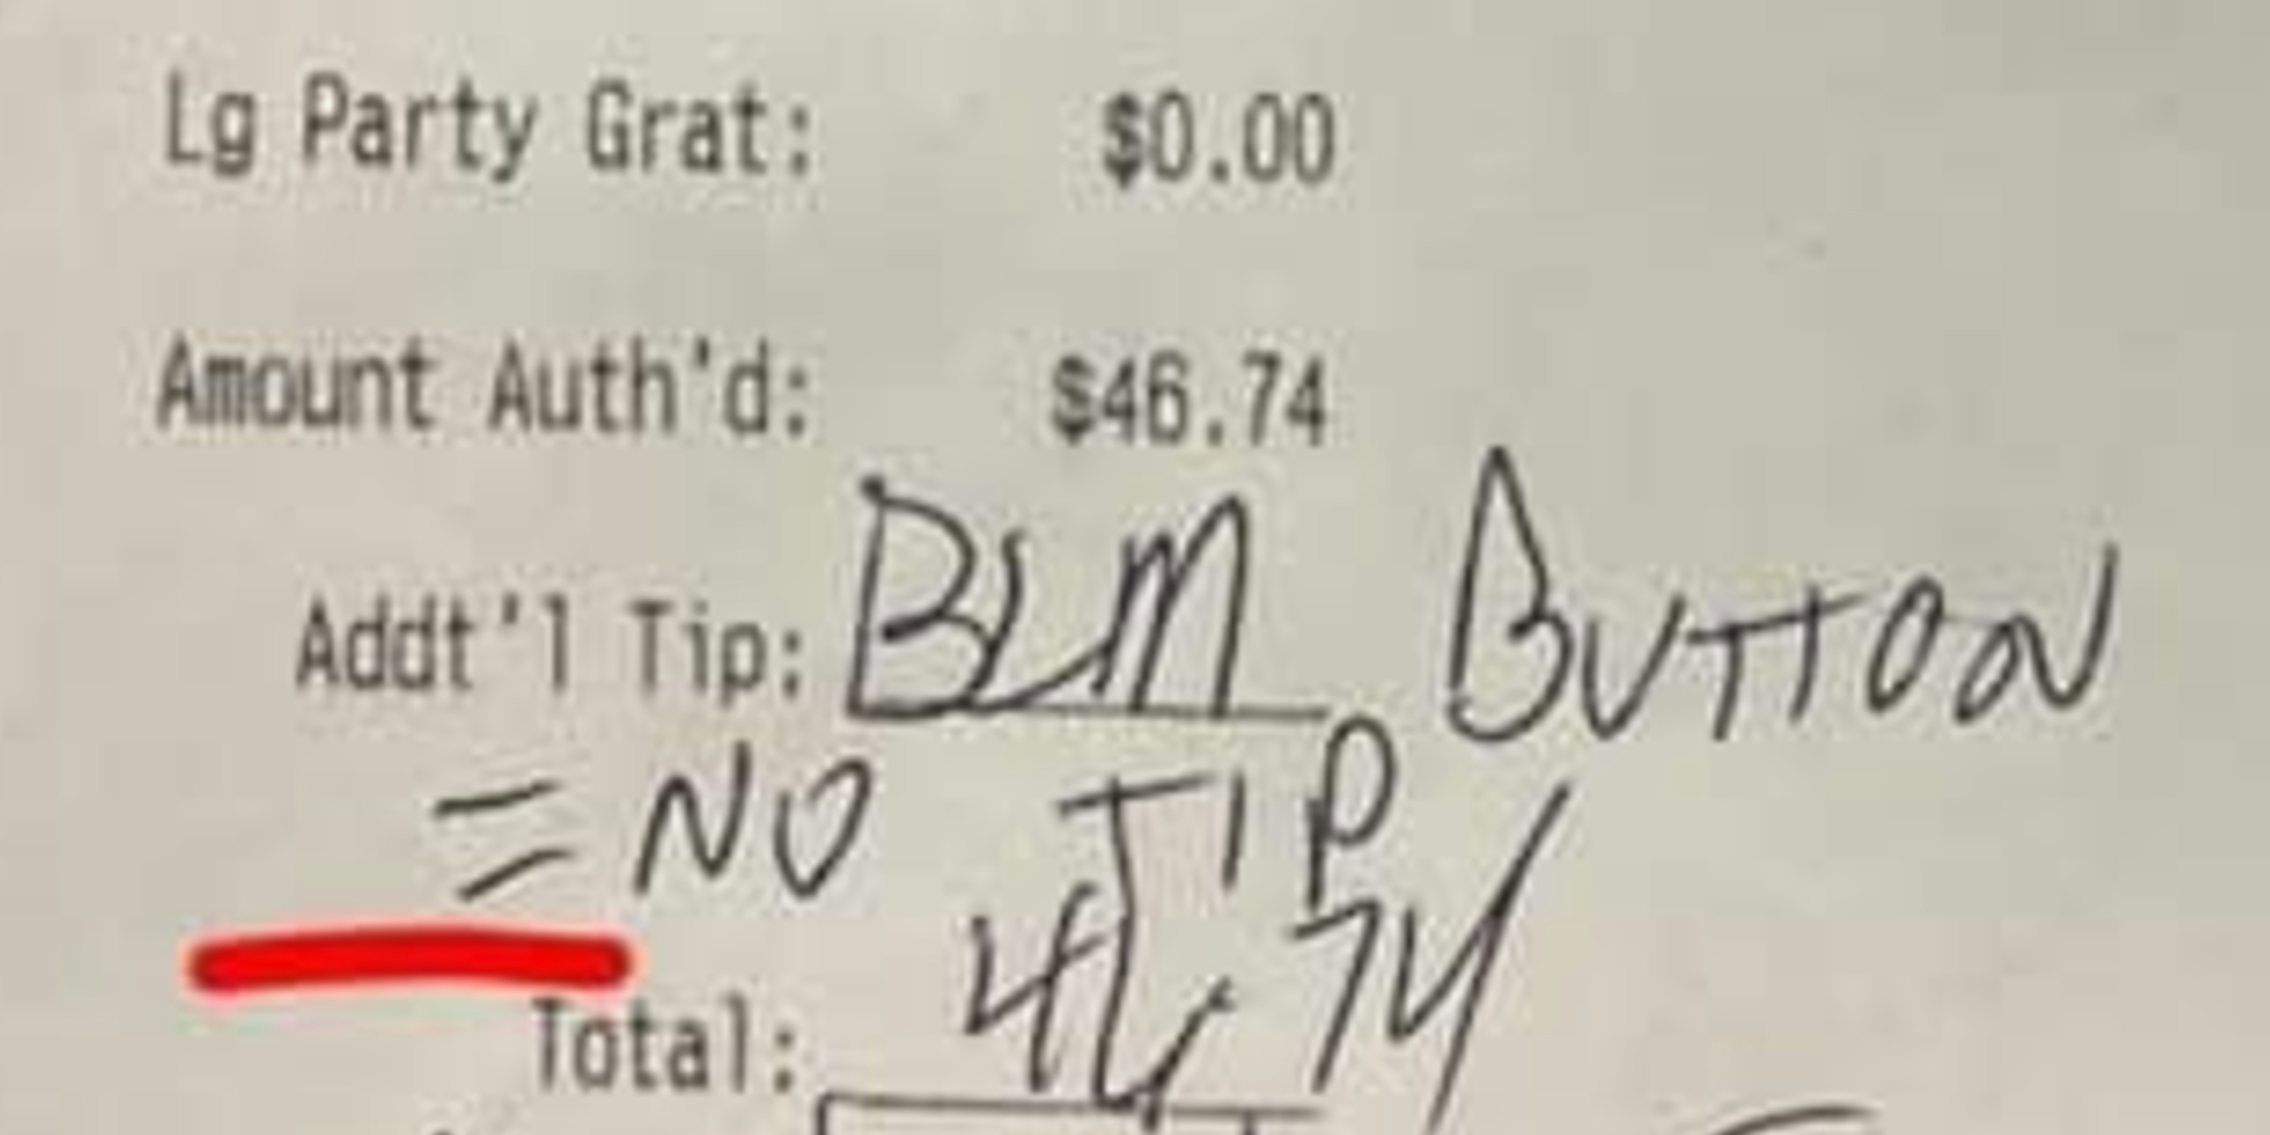 blm button no tip receipt